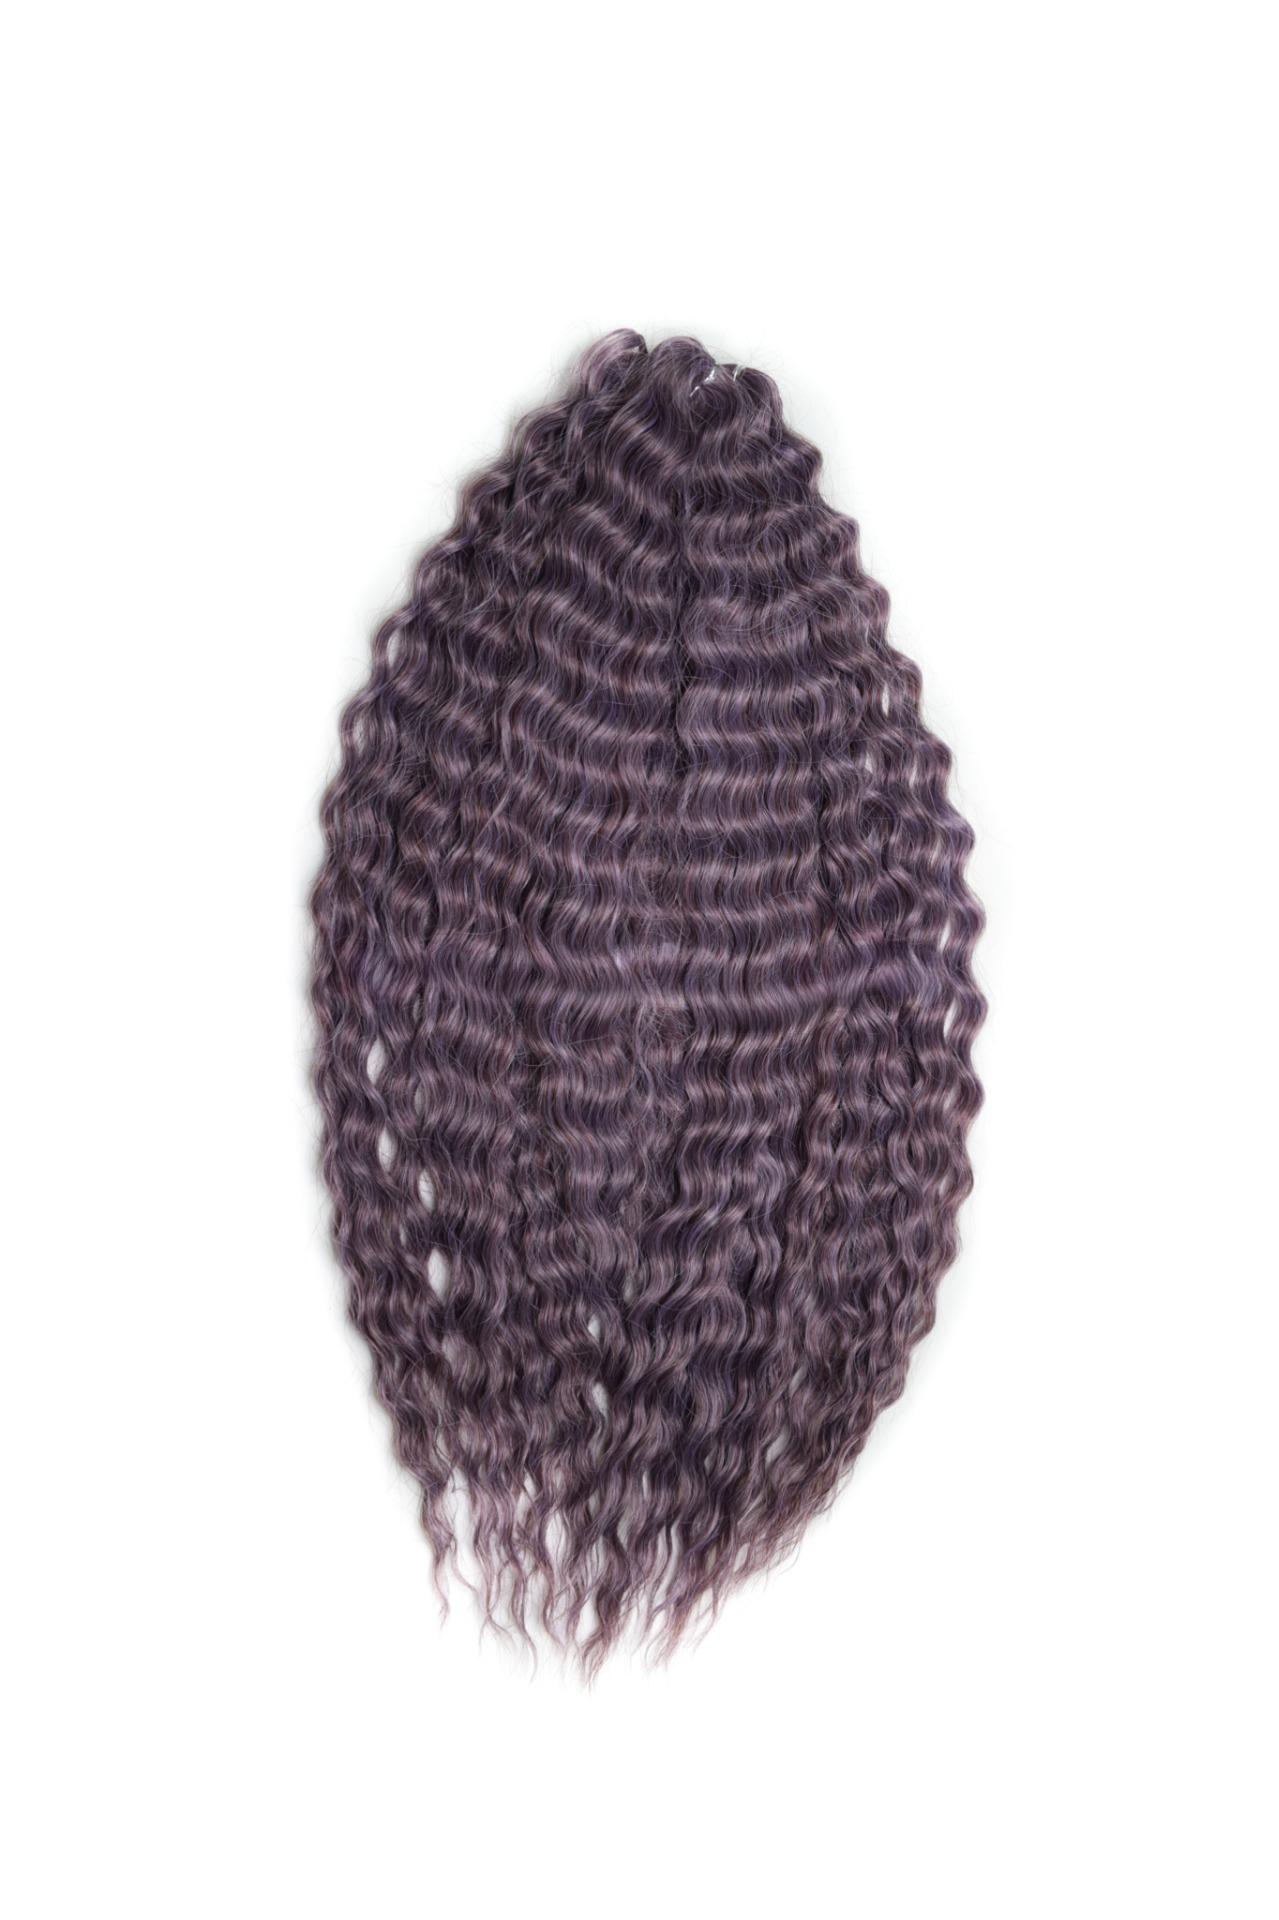 Афрокудри для плетения волос Ariel Ариэль цвет PURPLE GREY длина 60см вес 300г афрокудри для плетения волос ariel ариэль 1b red красный 60см 300г